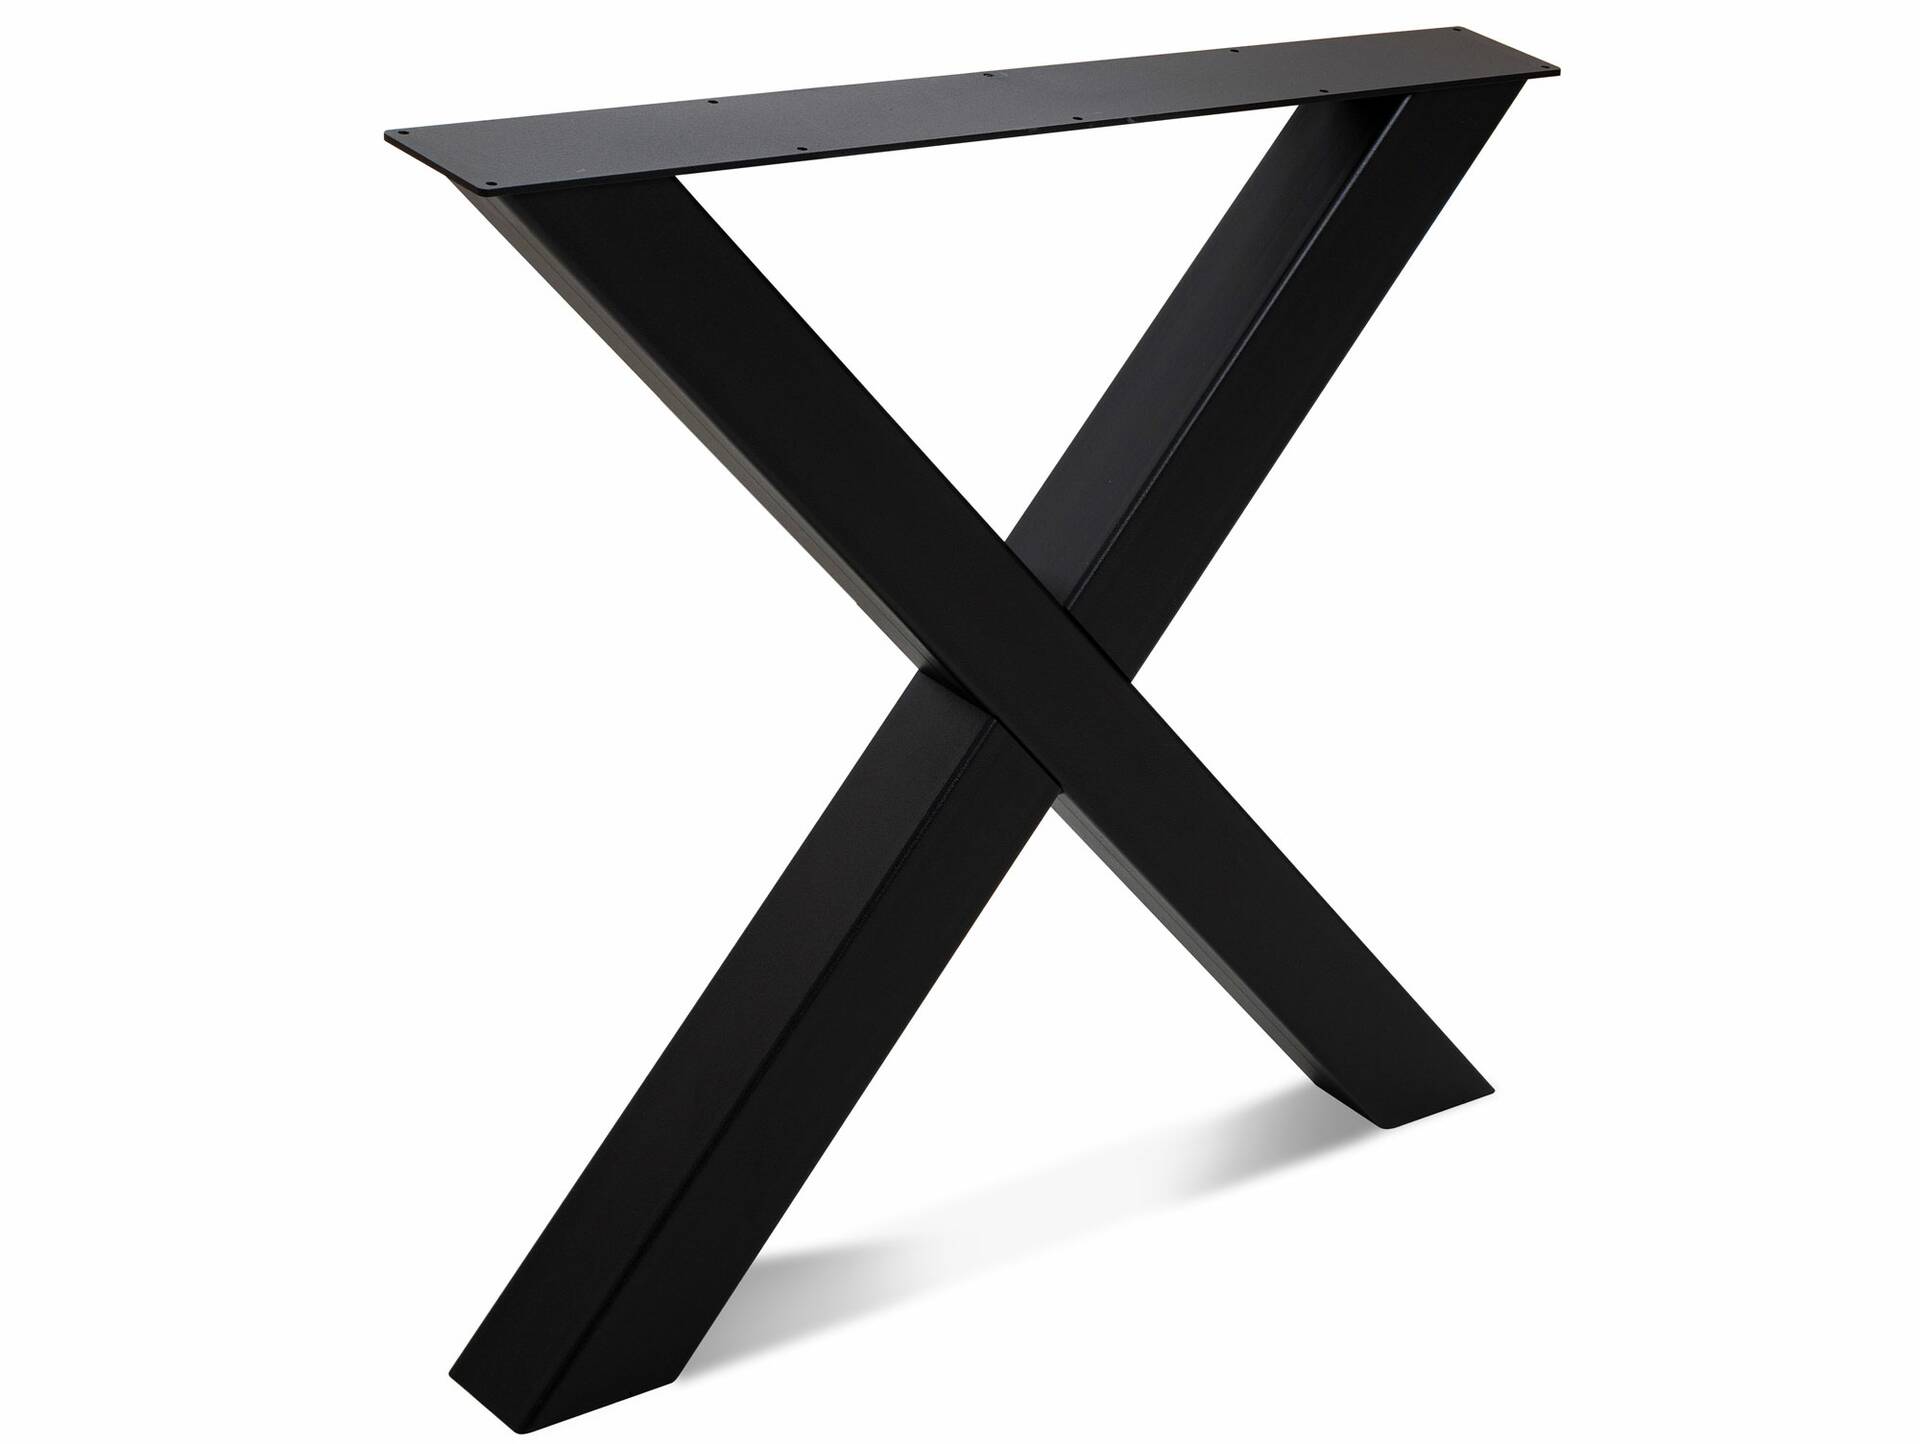 COLORADO II Esstisch mit Baumkante, Material Massivholz Eiche/X-Gestell Metall schwarz 200 x 100 cm